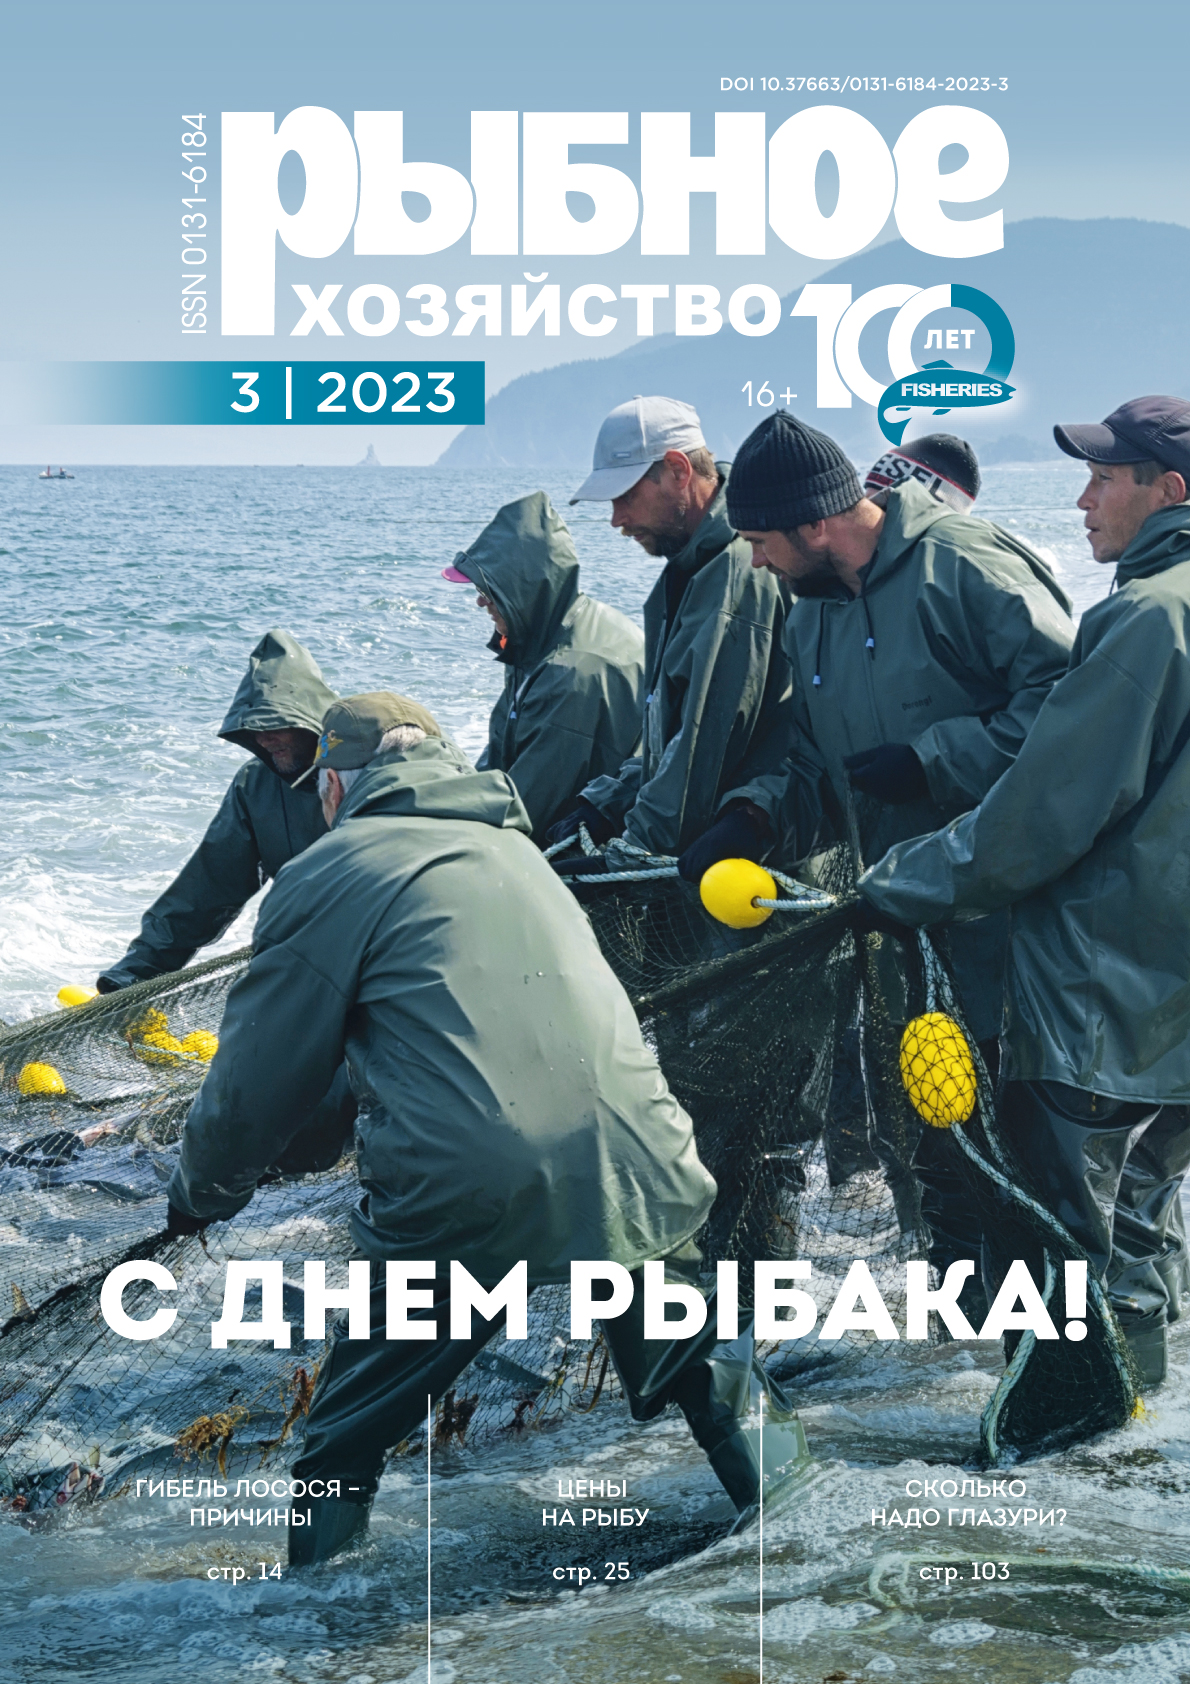             Промышленный лов тихоокеанской сельди (Clupea pallasii) в январе-апреле 2023 г. в северной части Охотского моря
    